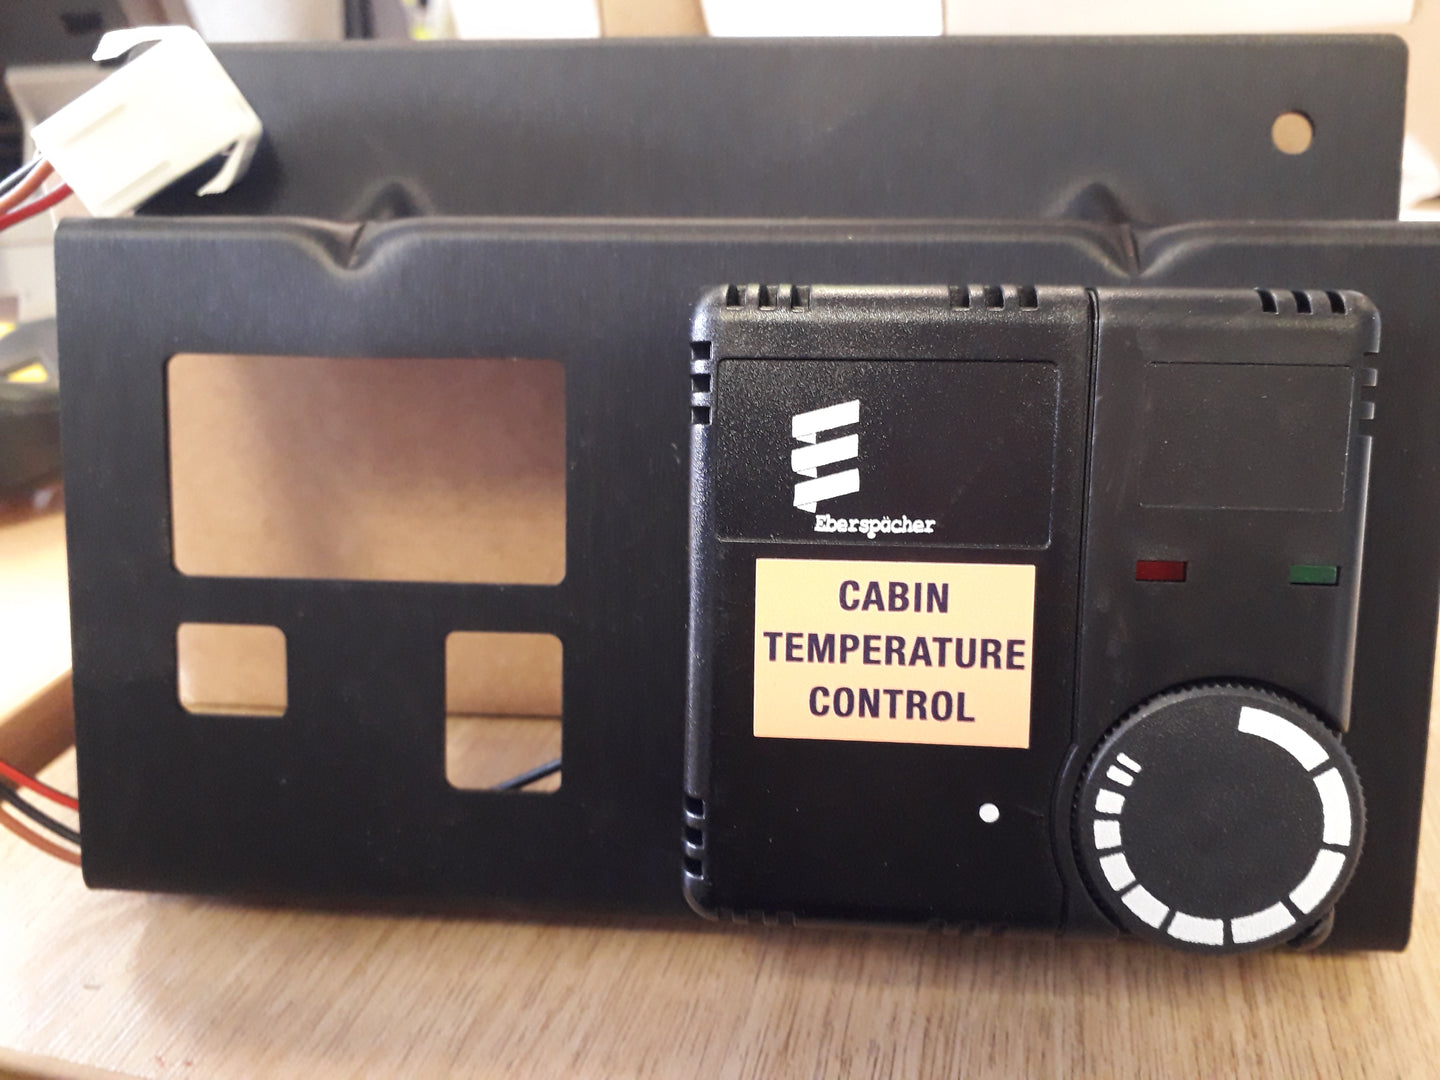 Retro Panel Switch for Cabin Temperature Control - Eberspacher